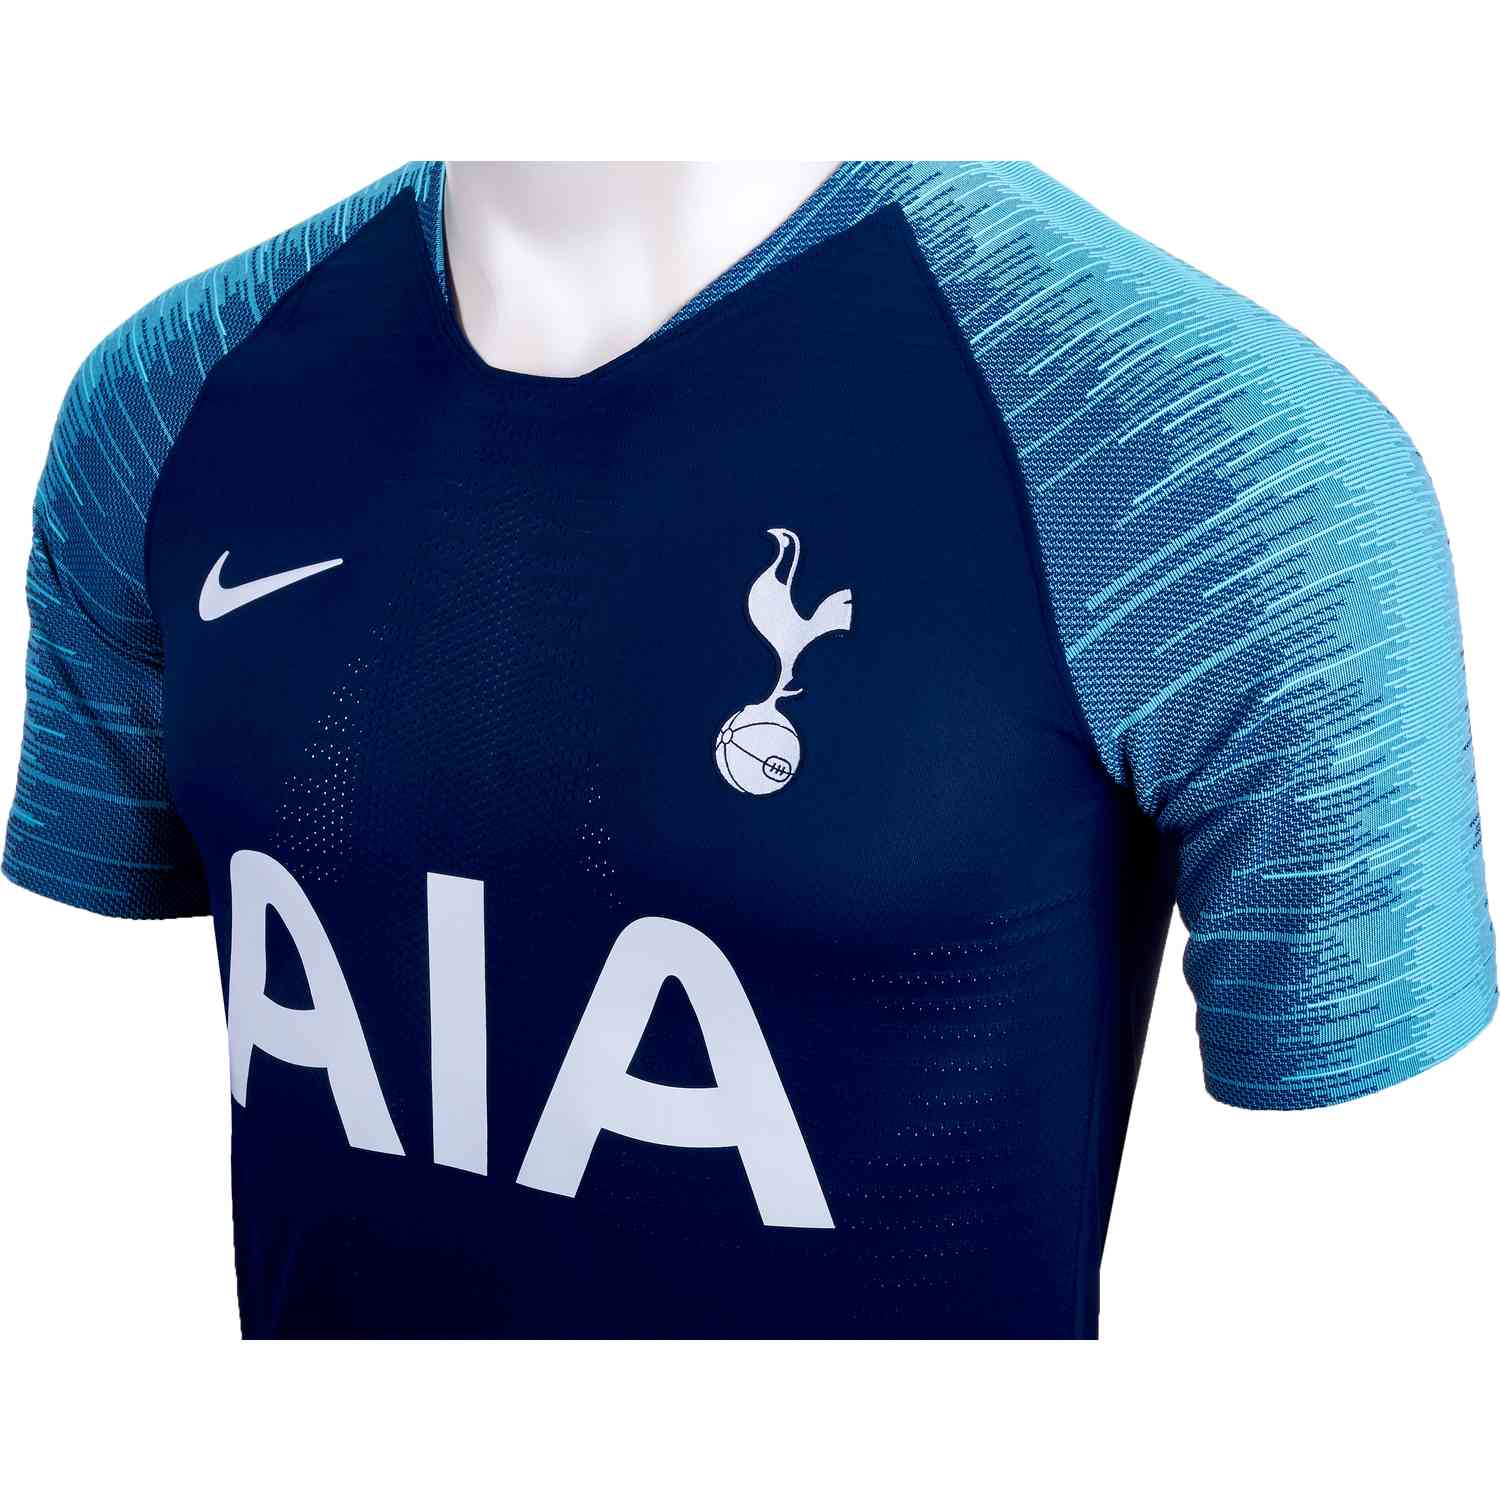 Tottenham Hotspur 2018-2019 Nike Third Vaporknit match